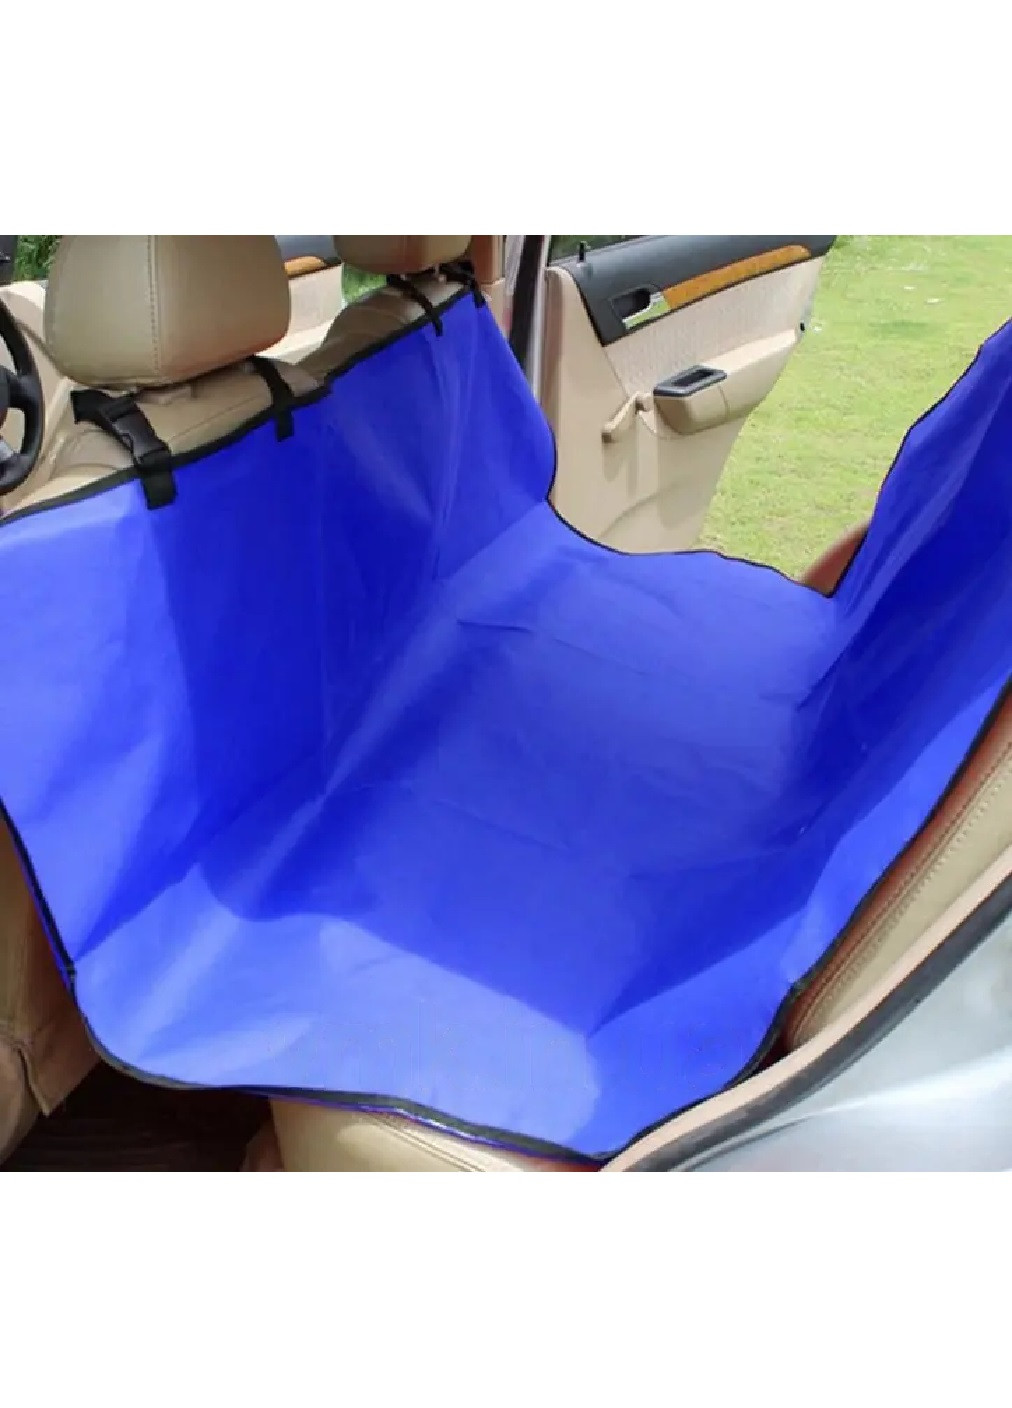 Автомобильный гамак накидка чехол на заднее сидение авто для перевозки животных собак кошек 134х132 см (473858-Prob) Синий Unbranded (256675429)